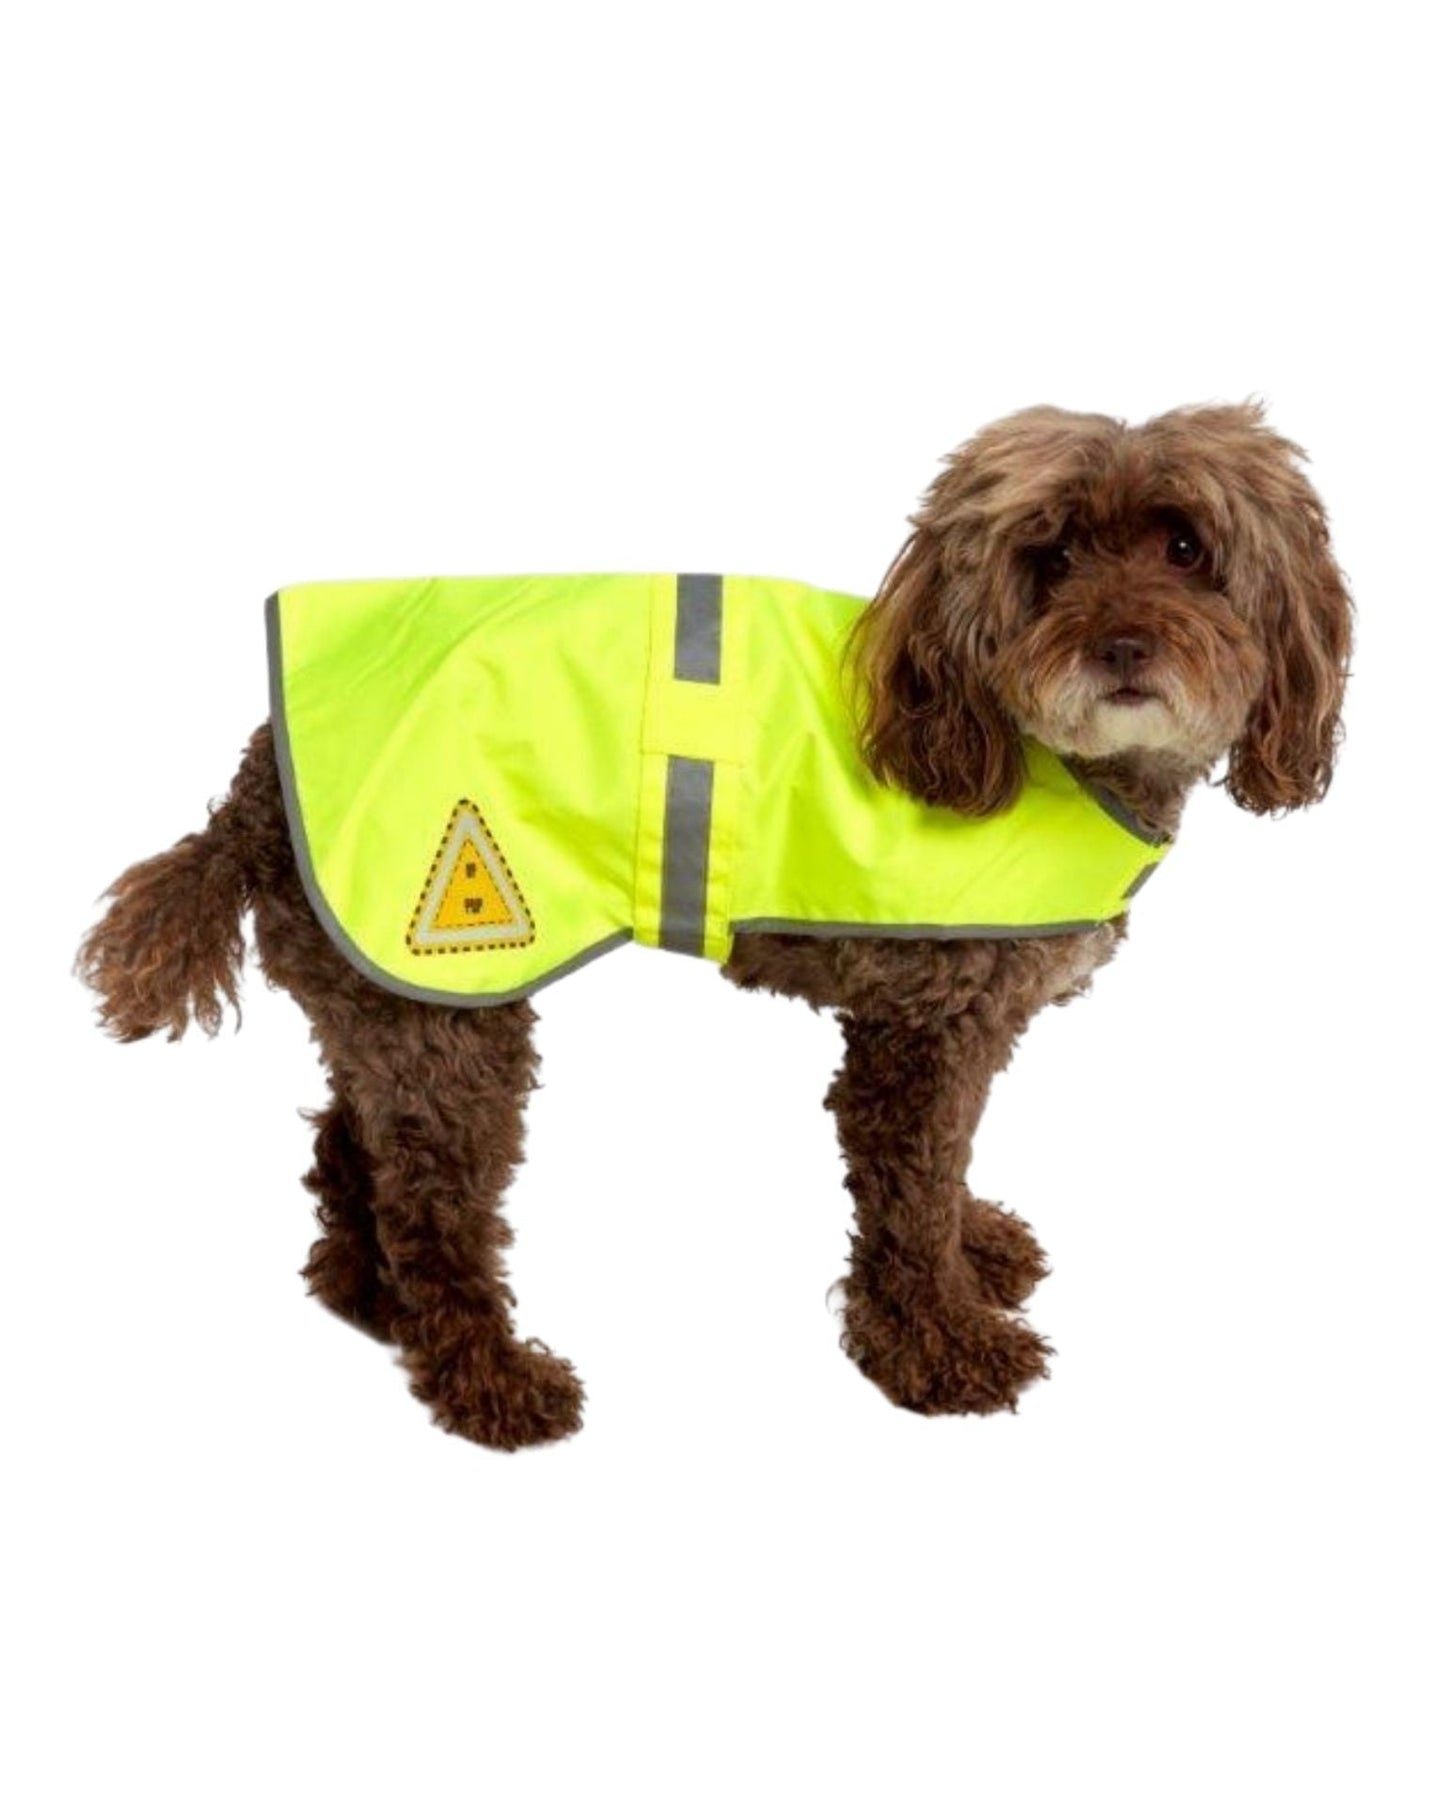 HiVis Dog Safety Vest - UHV900 Utility Pro